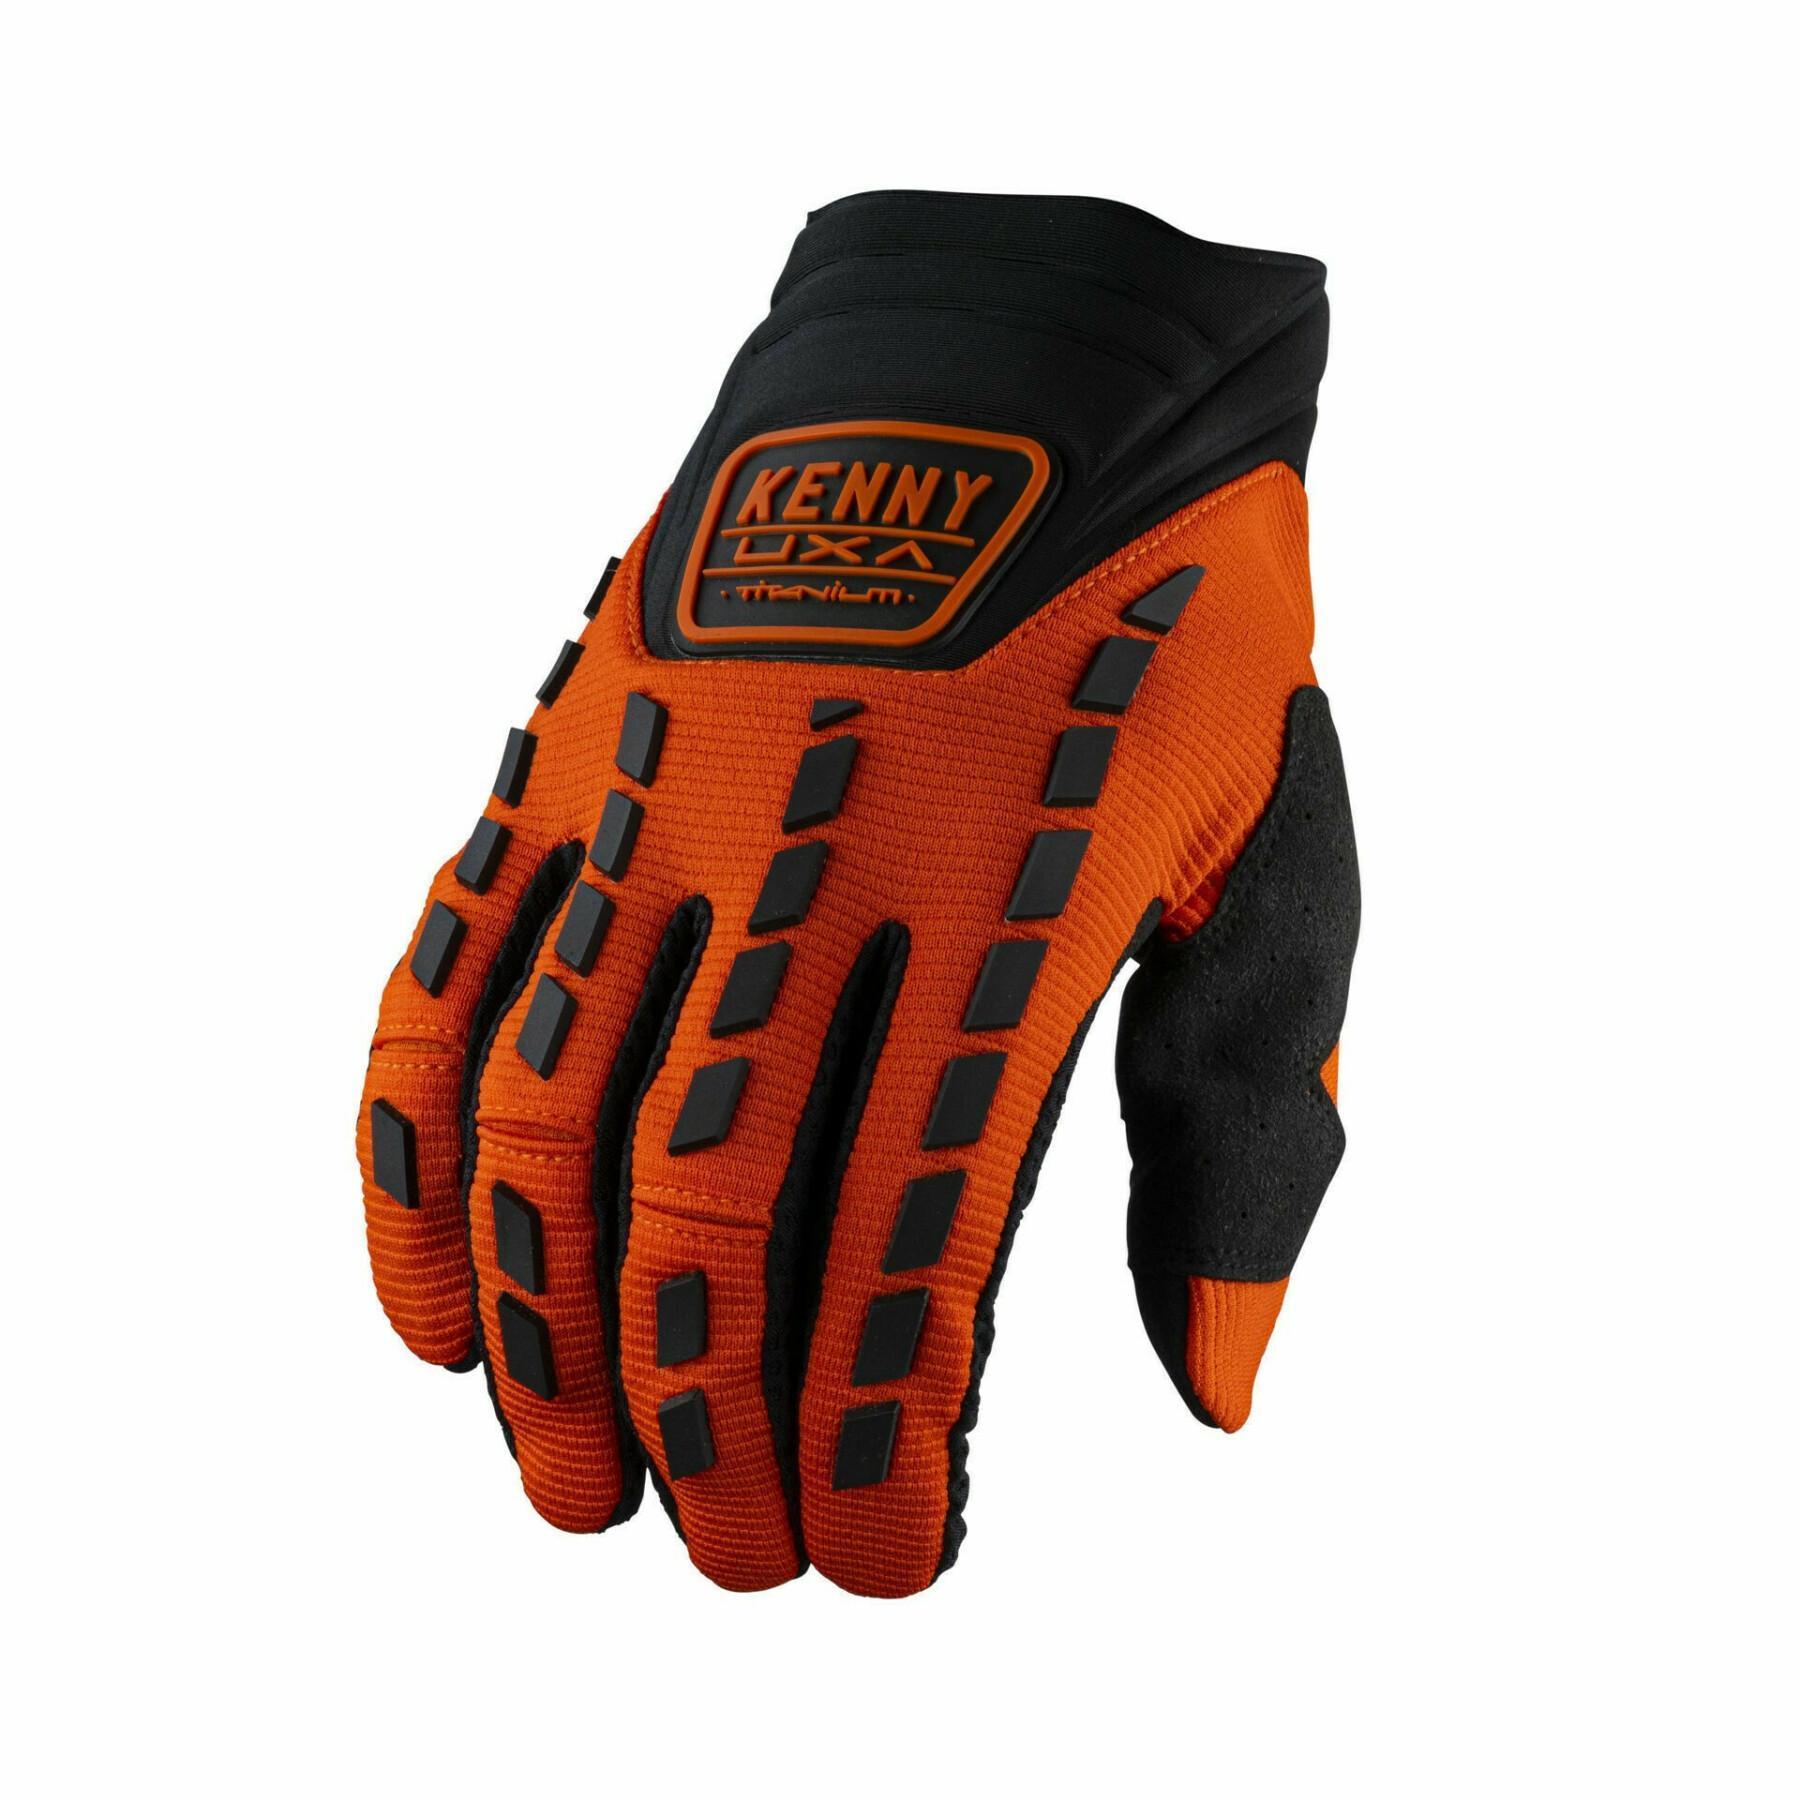 Motocross-handskar Kenny titanium